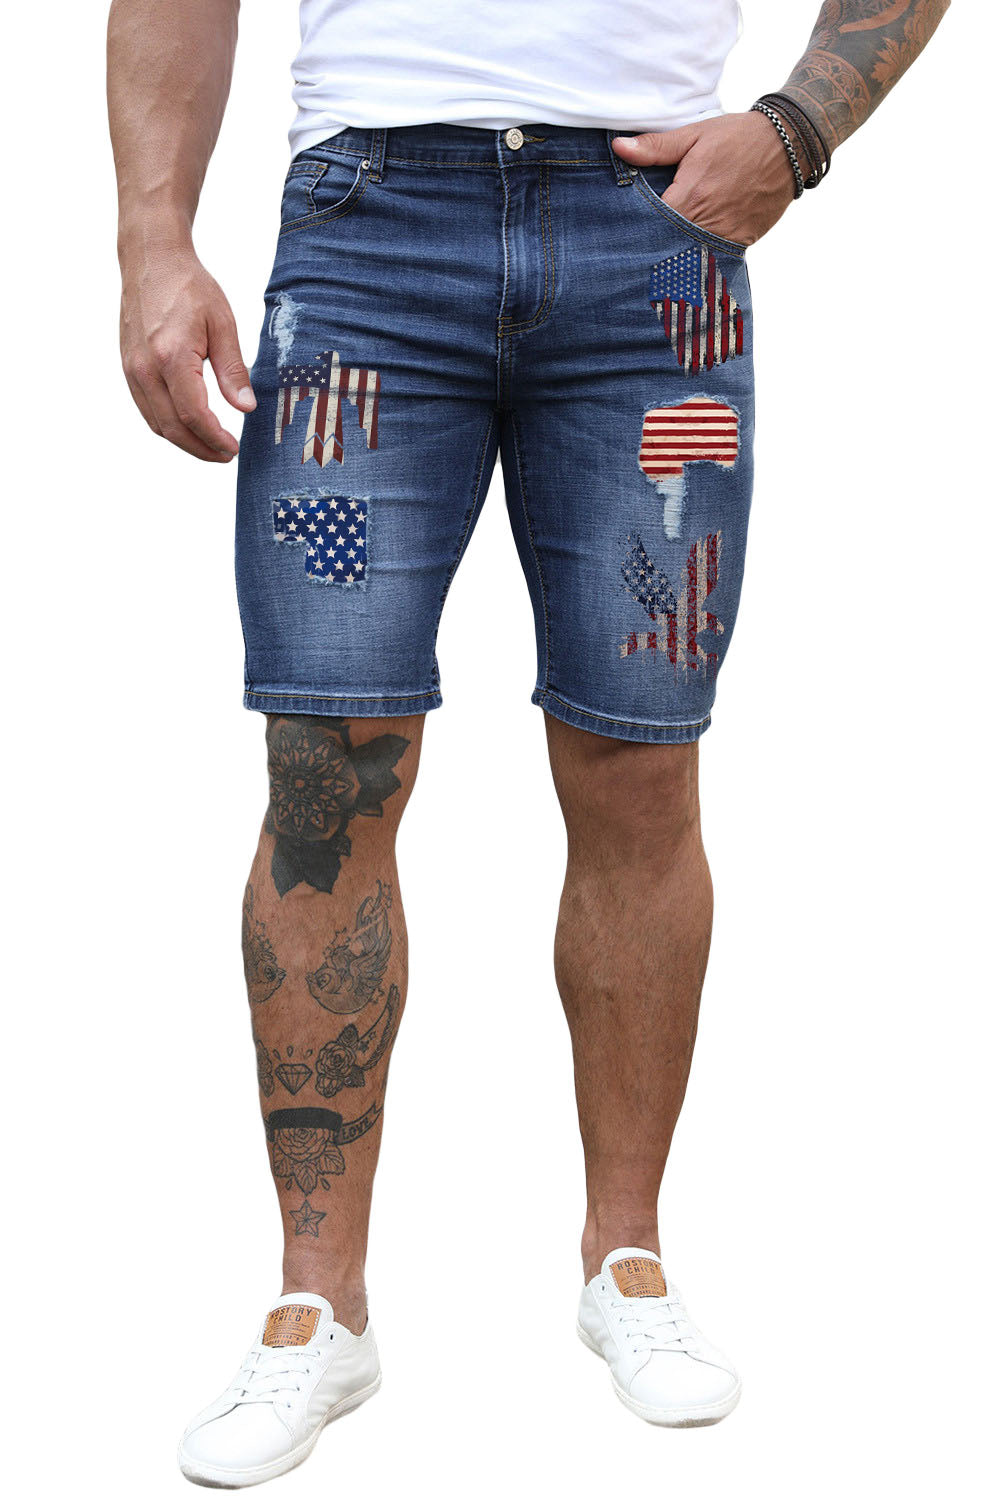 Blue American Flag Pattern Patchwork Muscle Fit Men's Jeans Men's Pants JT's Designer Fashion